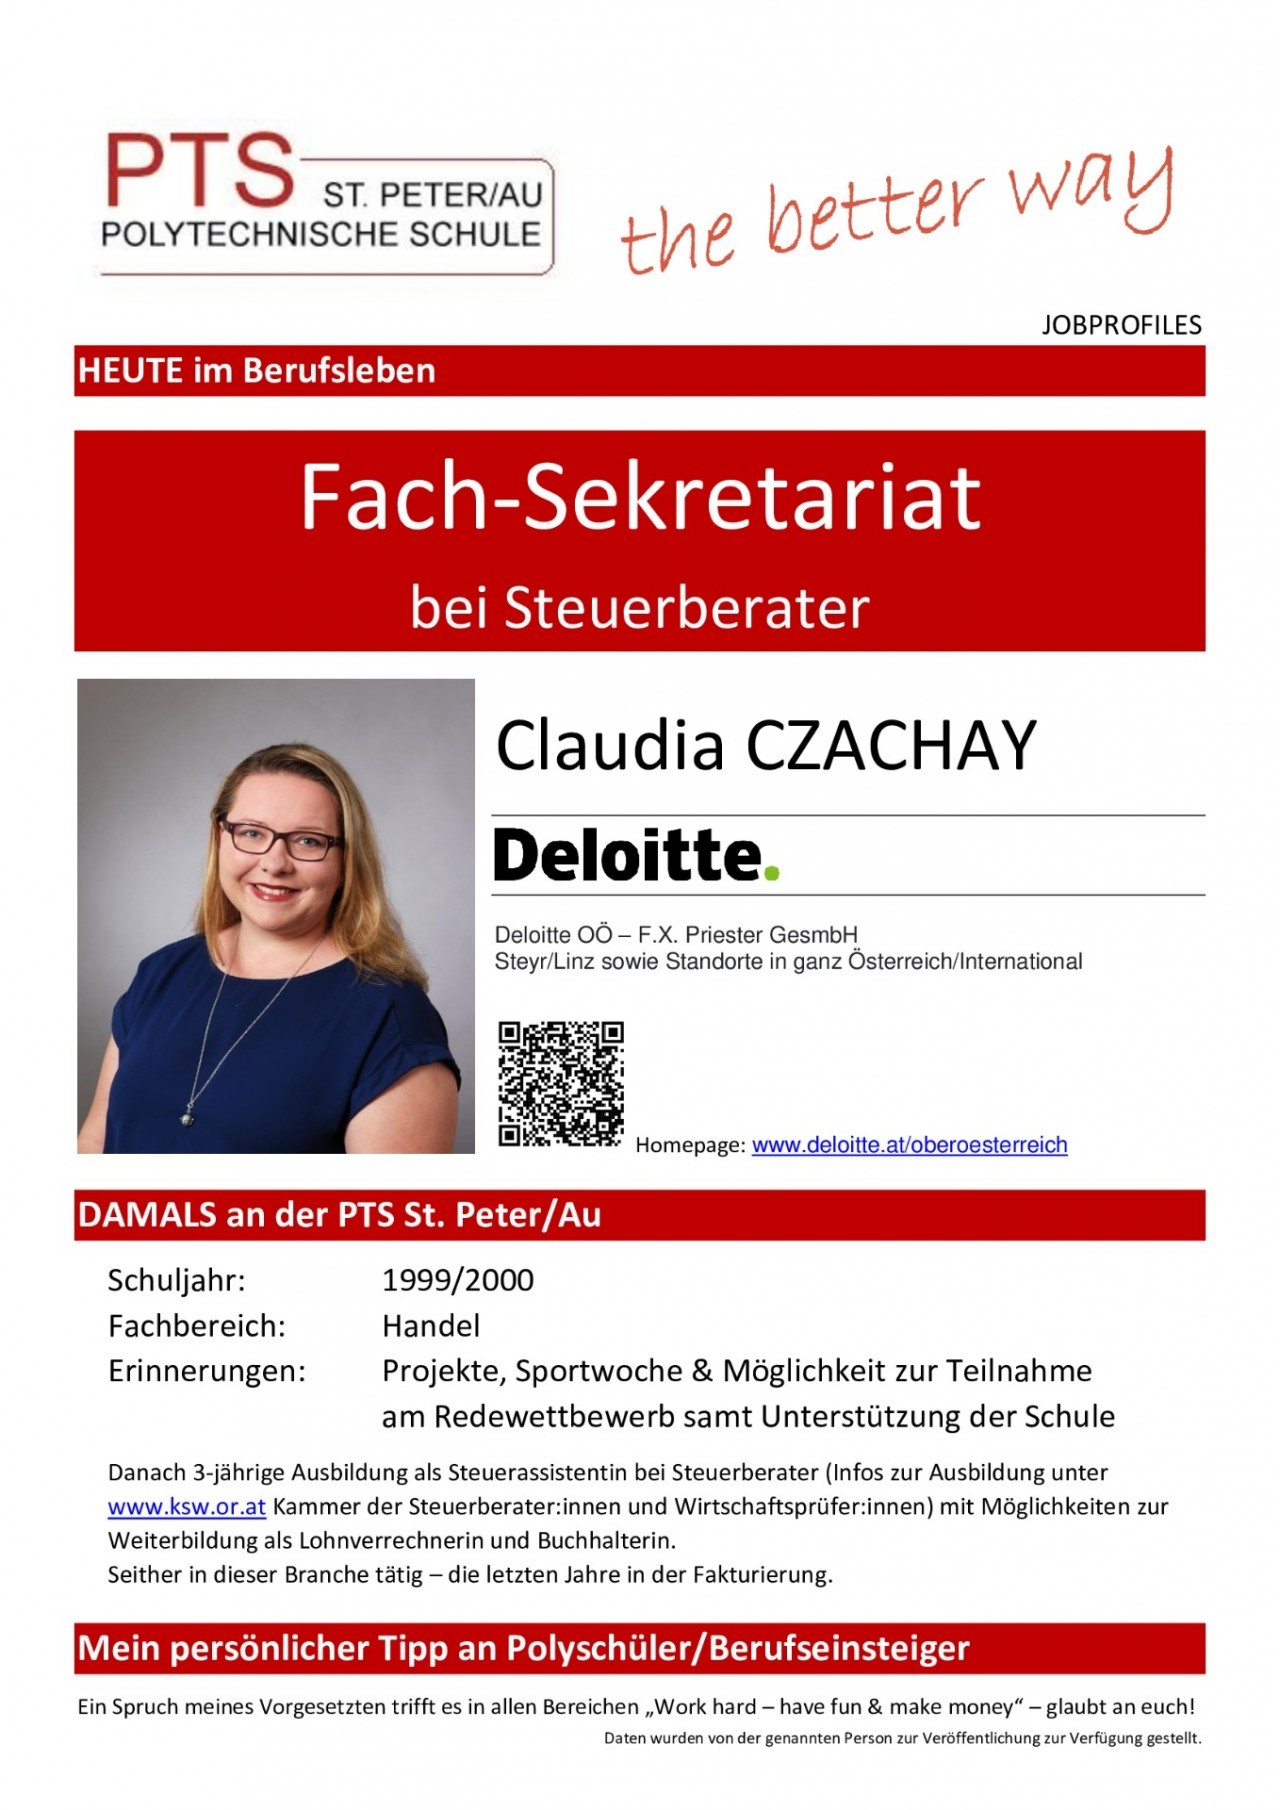 jobprofiles-ausgefuellt-claudiaczachay-pdf.jpg